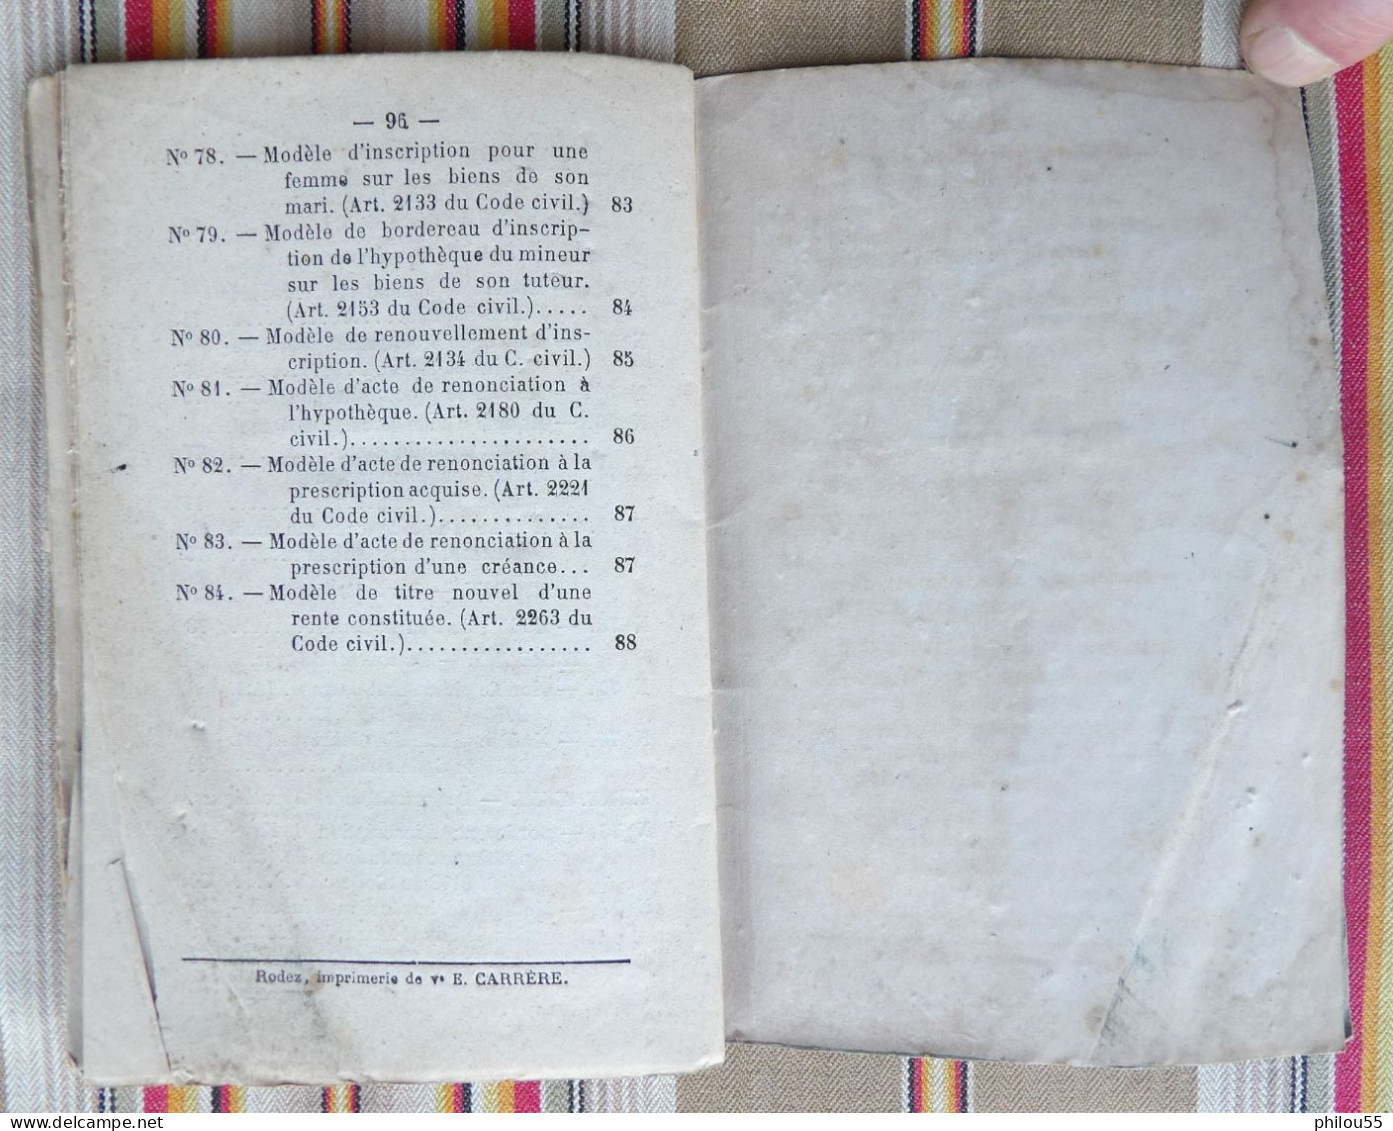 12 RODEZ Ve E. CARRERE Formulaire du Code Civil pour les Actes sous Seing Prive par M. BARTHE 1875